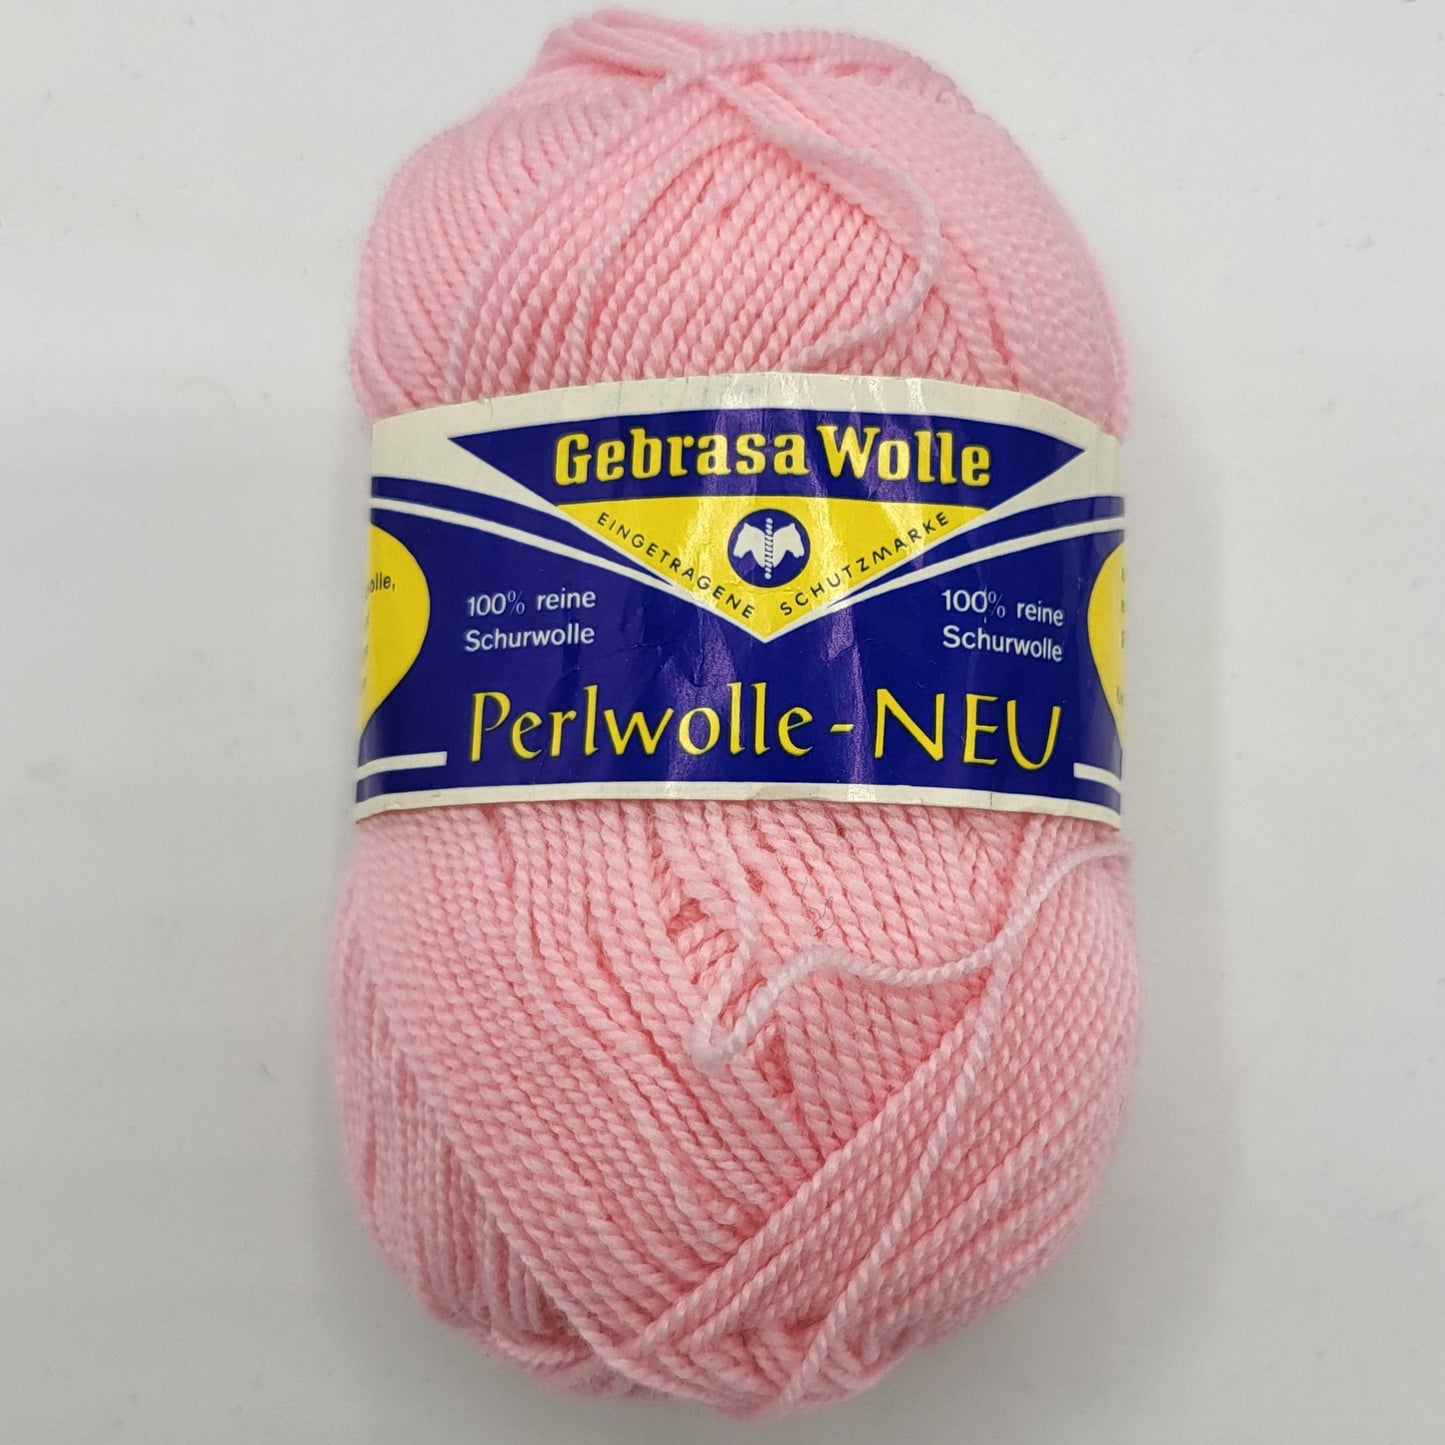 Gebrasa Wolle Perlwolle 50g 100% Schurwolle Strickgarn